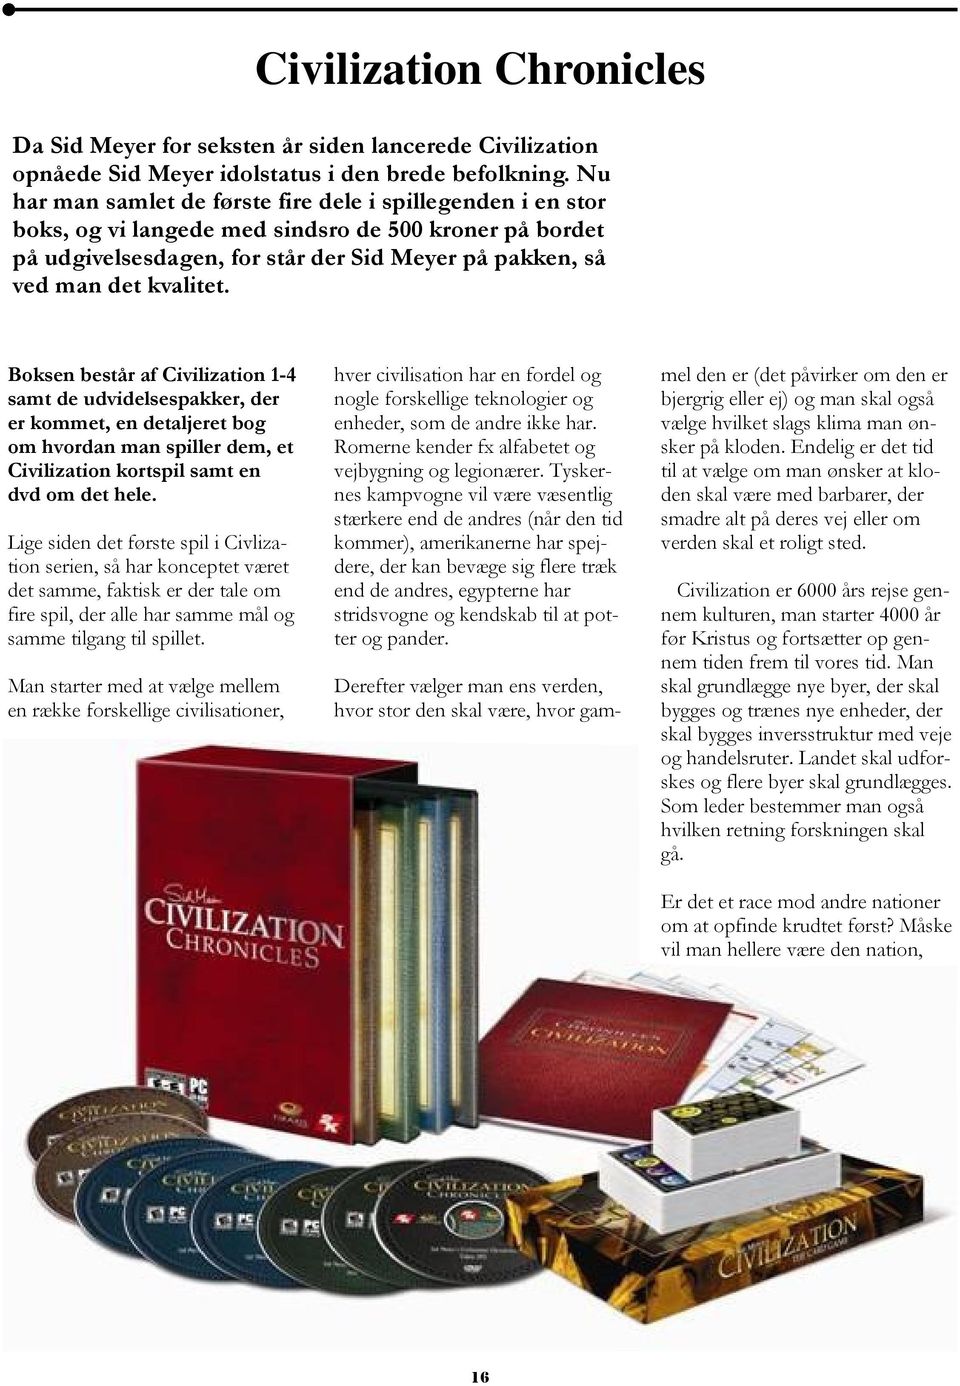 Boksen består af Civilization 1-4 samt de udvidelsespakker, der er kommet, en detaljeret bog om hvordan man spiller dem, et Civilization kortspil samt en dvd om det hele.